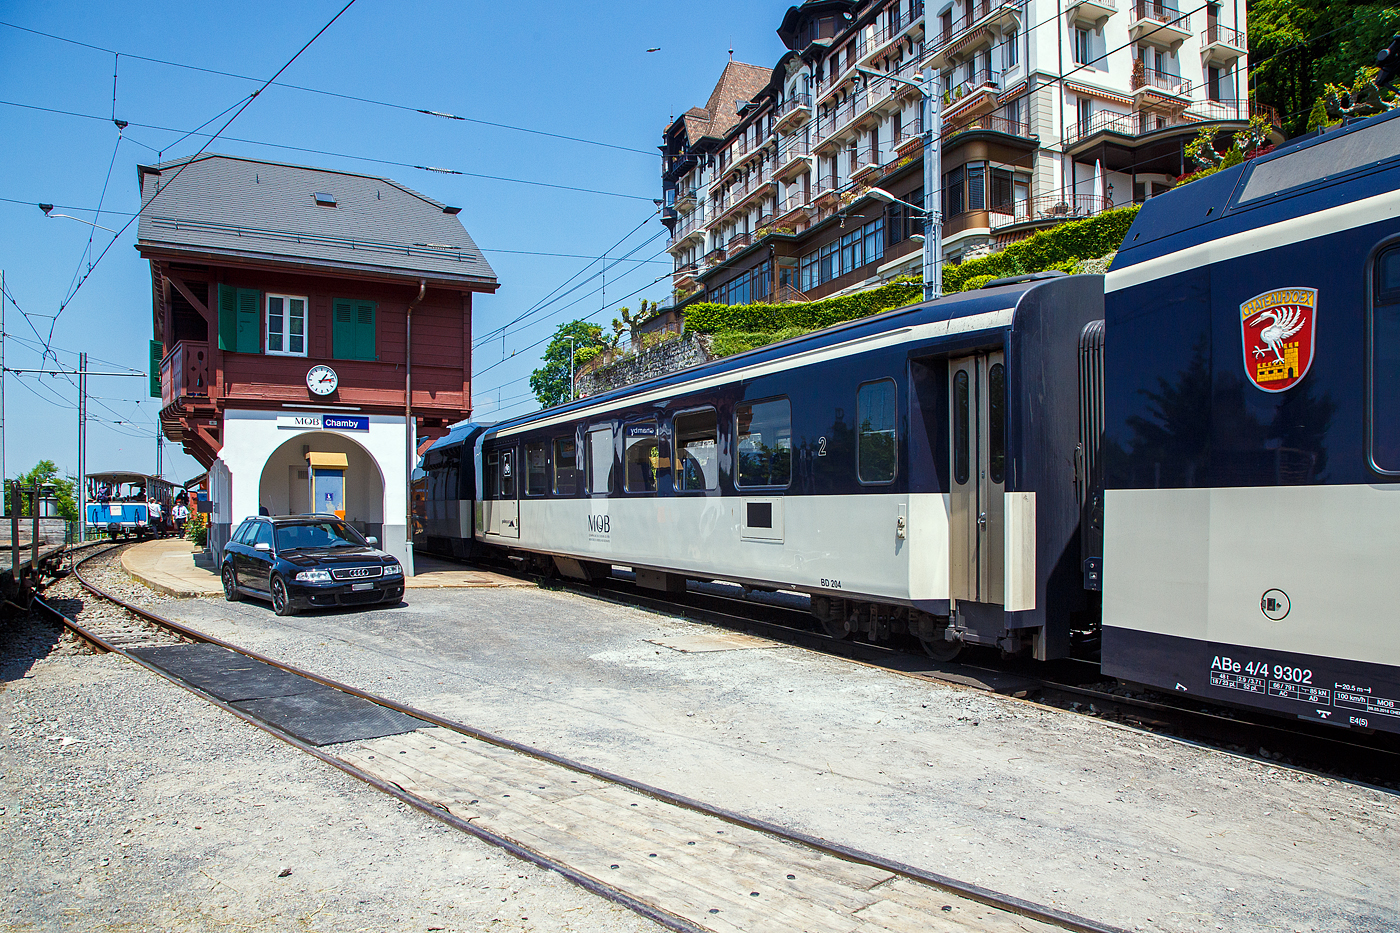 Der MOB vierachsige 2. Klasse Personenwagen mit Gepckabteil BD 204, ex B 204, ex A 81 II, am 27.05.2023 im Zugverband im Bahnhof Chamby.

Die MOB (Montreux Oberland Bernois / Montreux-Berner Oberland-Bahn) haben ihr Rollmaterial immer wieder umgebaut. Bei den Wagen B203 sowie BD 204-206 handelt es sich bereits um den zweiten Umbau im Jahre 1995 aus Plattformwagen, die ihrerseits 1972 auf alten Untergestellen entstanden sind.

Im Jahr 1911 wurde der A 81 mit verblechten Holzkasten und offenen Plattformen gebaut, 1961 erhielt dieser SIG Torsionsstab–Drehgestelle. Im Jahr 1968 wurde der Wagen abgebrochen, da er fast neue Drehgestelle besa wurde das Untergestell weiter fr den Aufbau fr den B 204 verwendet. Der neue Wagenkasten wurde nach den Konstruktionsprinzipien der EW I von der FFA (Flug- und Fahrzeugwerke Altenrhein AG) darauf gebaut. Resultat war ein siebenfenstriger leichter Wagen mit 7 Fenstern, offenen Plattformen, ohne WC. Bei der MOB entstanden vier solcher FFA-Umbauwagen mit Sickendach.

Um diese Wagen weiter verwenden zu knnen, lie die MOB die Wagen ab 1994 bei R+J (Ramseier + Jenzer AG Bern) verlngern, mit normalen Einstiegen wie die EW I sowie einem erhhten Dach versehen und rstete sie mit neuer Inneneinrichtung und WC aus. So entstanden der B 203 und die BD 204–206, der BD 204 im Jahr 1997. Anschlieend wurden auch einige echte EW I einer vergleichbaren Modernisierung unterzogen. Dabei wurde die Fensterteilung beibehalten. 

TECHNISCHE DATEN:
Hersteller: MOB / R&J / FFA / SIG
Spurweite: 1.000 mm (Meterspur)
Achsanzahl: 4 (in 2 Drehgestellen)
Lnge ber Puffer: 18.020 mm / ursprnglich 14.250 mm
Wagenkastenlnge: 17.020 mm
Hhe: 3.700 mm
Breite: 2.650 mm
Drehzapfenabstand: 12.100 mm / ursprnglich 8.680 mm
Achsabstand im Drehgestell: 1.800 mm
Drehgestell Typ: SIG- Torsionsstab
Laufraddurchmesser: 750 mm (neu)
Eigengewicht: 19,9 t / ursprnglich 13,9 t
Hchstgeschwindigkeit: 80 km/h
Sitzpltze: 46 (in der 2. Klasse) 
Ladeflche: 9,3 m / 2,0 t
WC: 1

Quellen: x-rail.ch und wikipedia